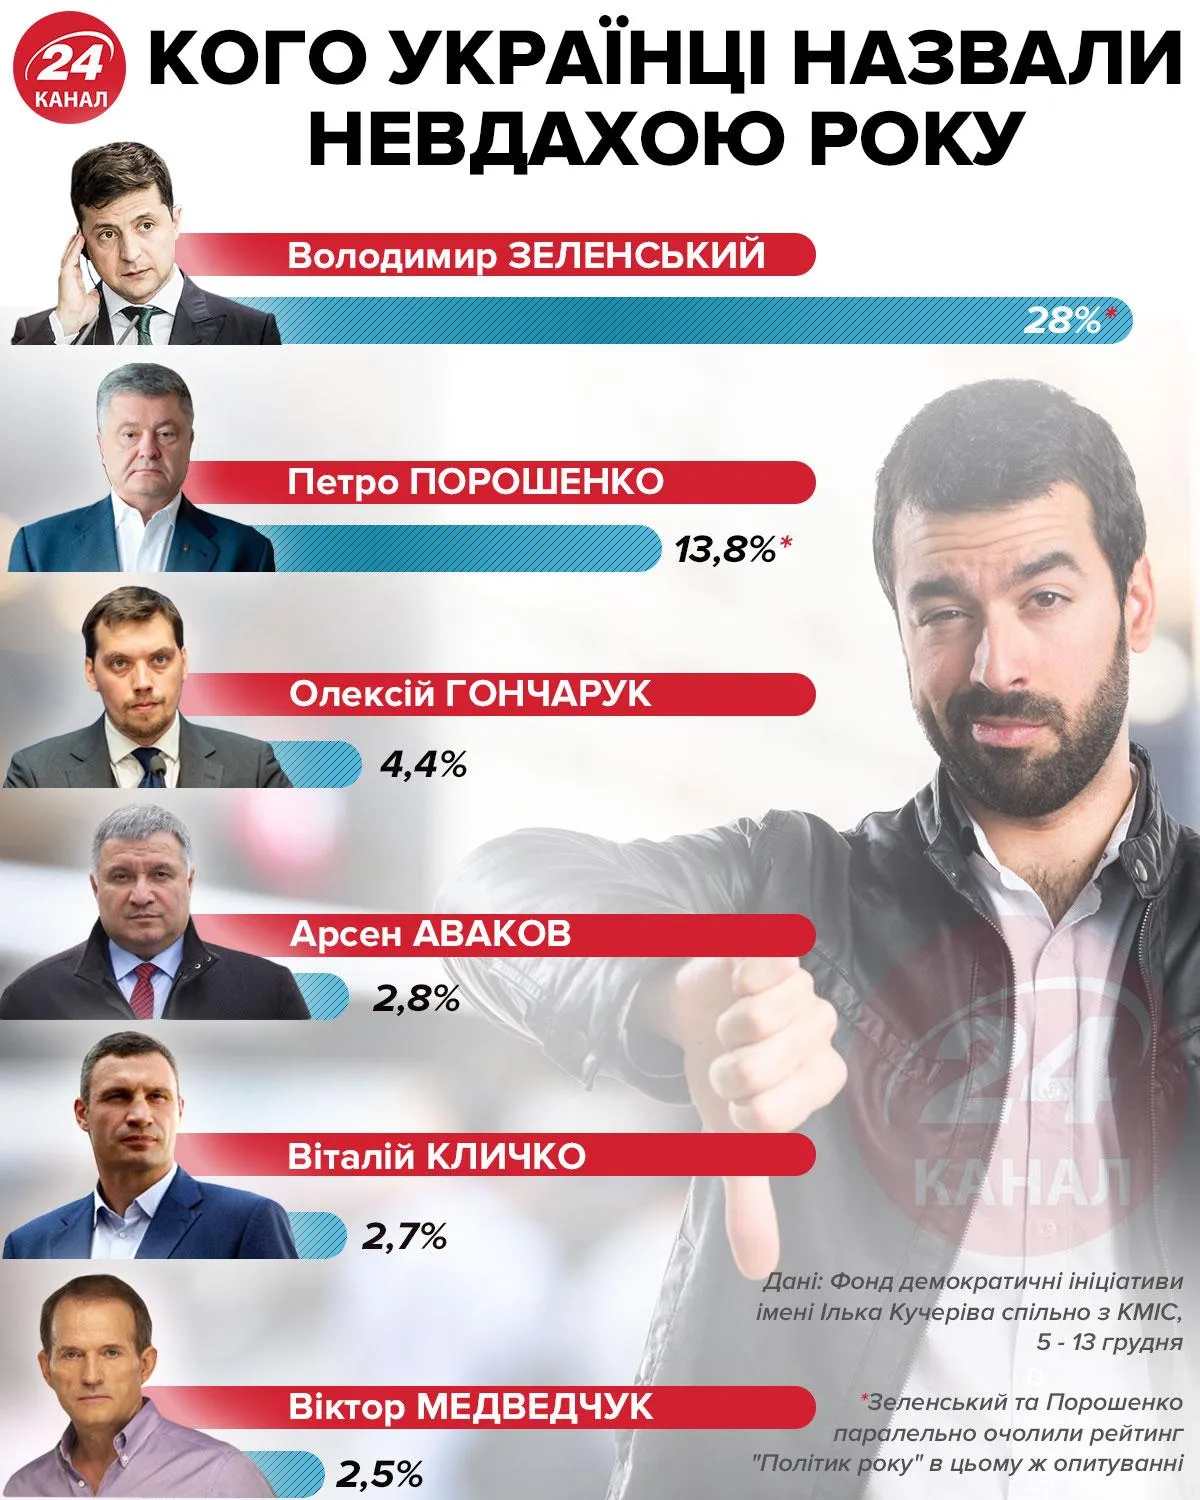 Хто невдаха року за версією українців інфографіка 24 канал